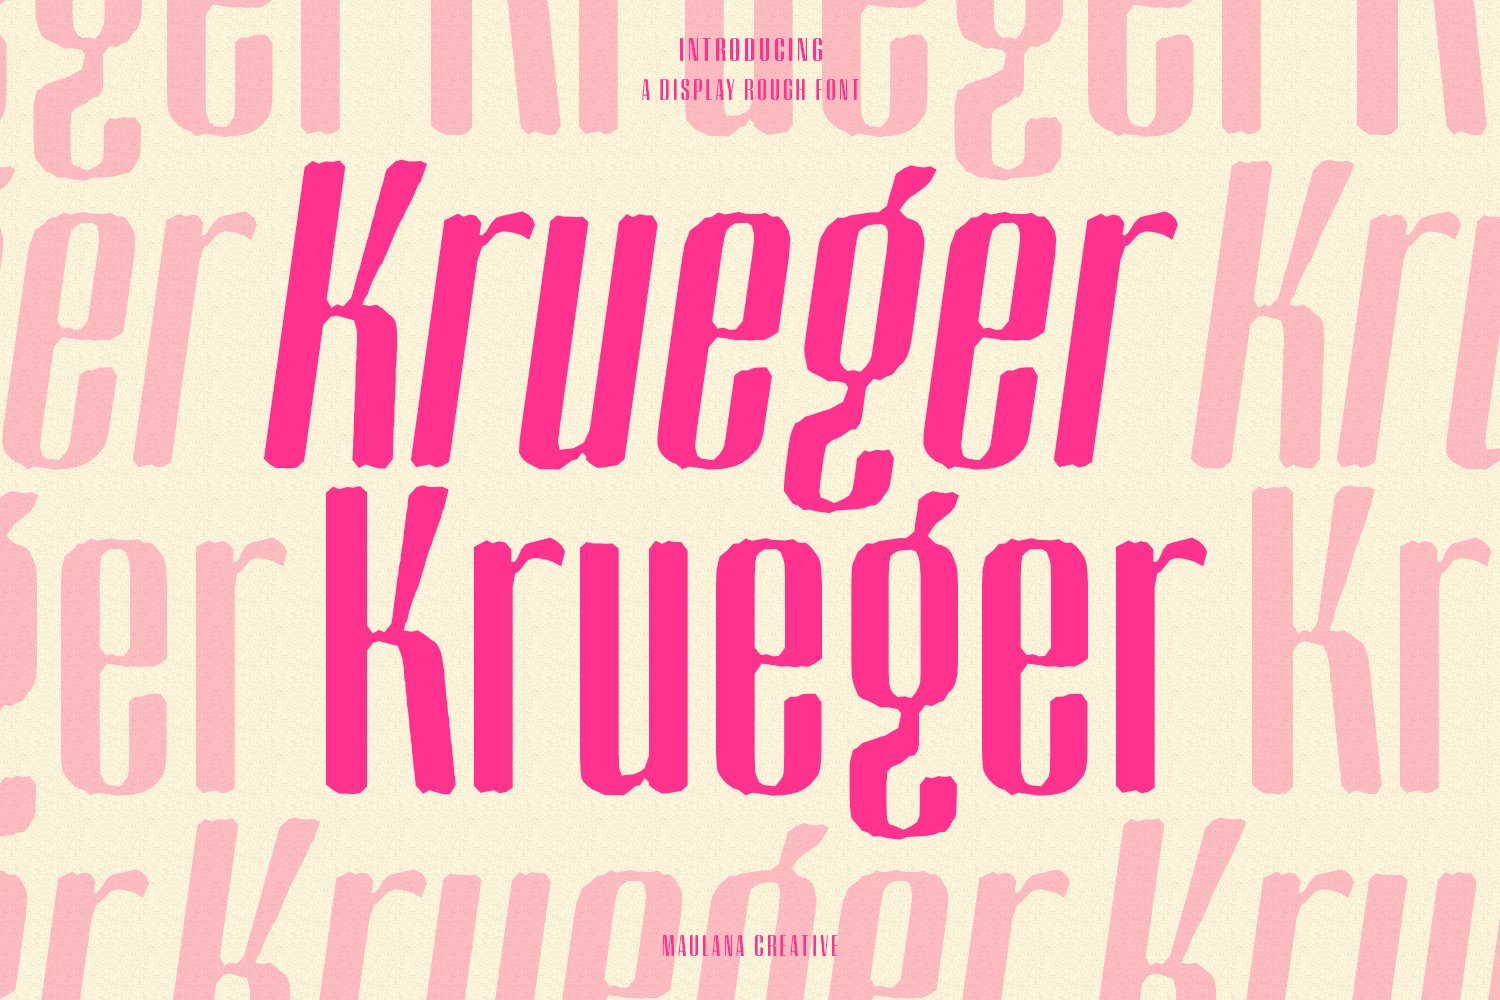 Krueger Sans Display Font cover image.